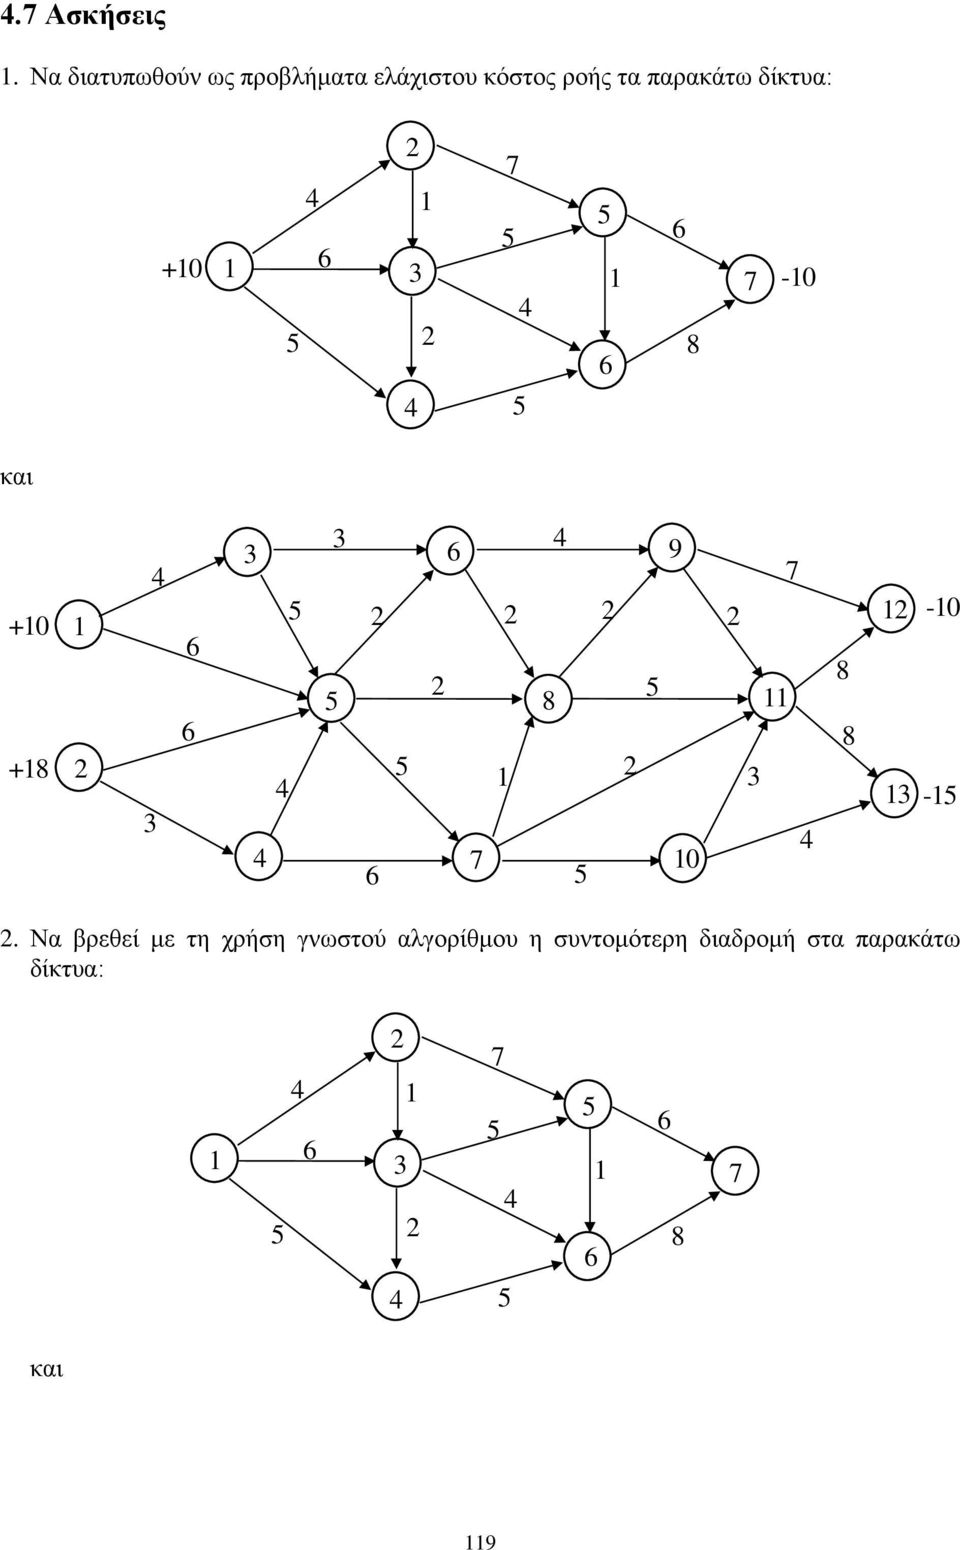 ροής τα παρακάτω δίκτυα: +0-0 και +0-0 0 - +.